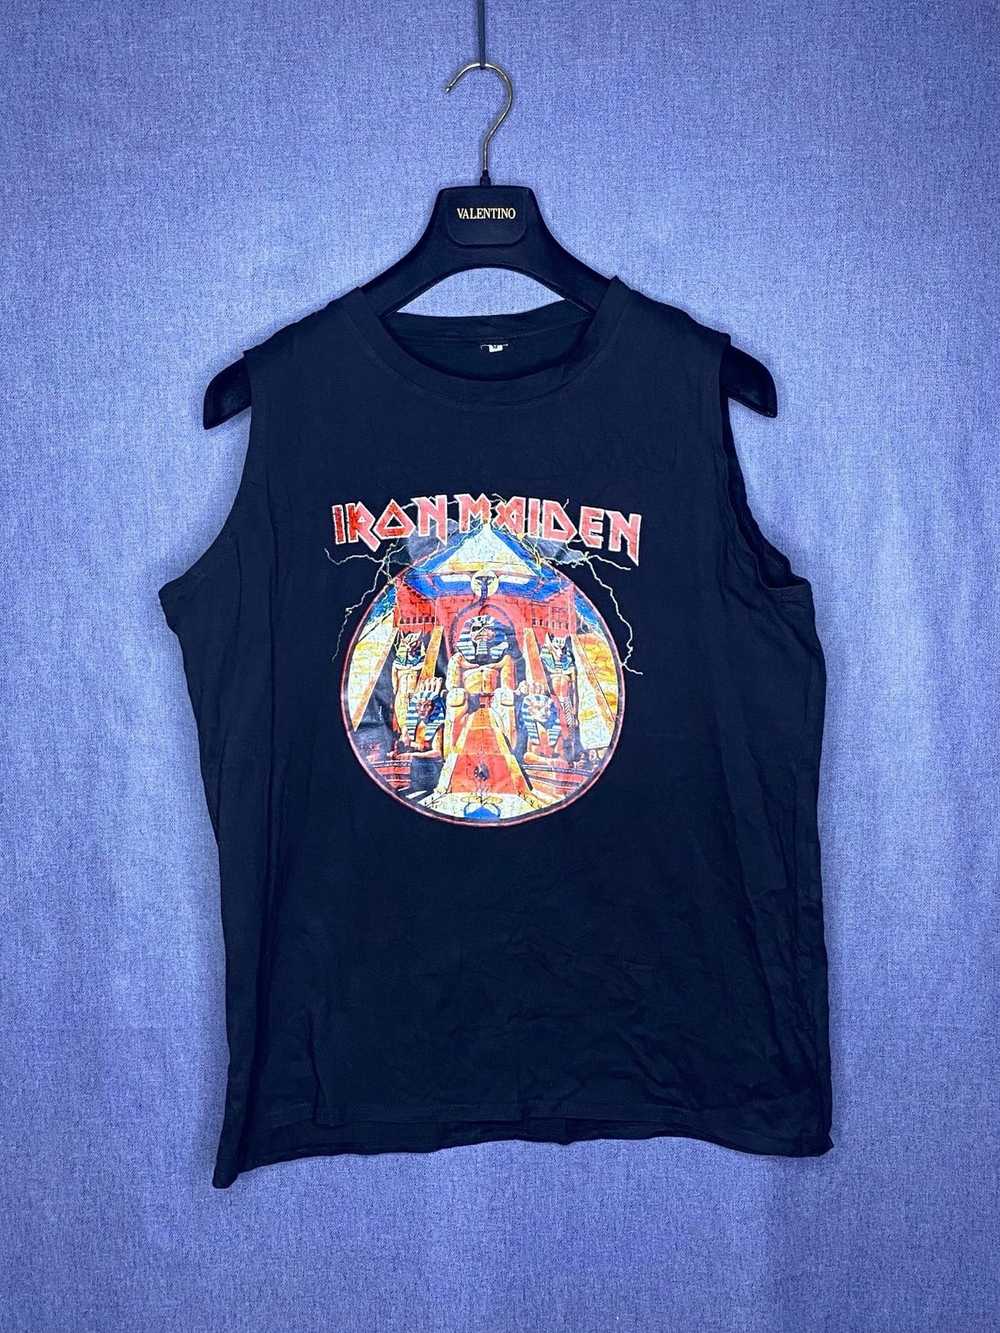 Iron Maiden Iron Maiden tank top shirt - image 1